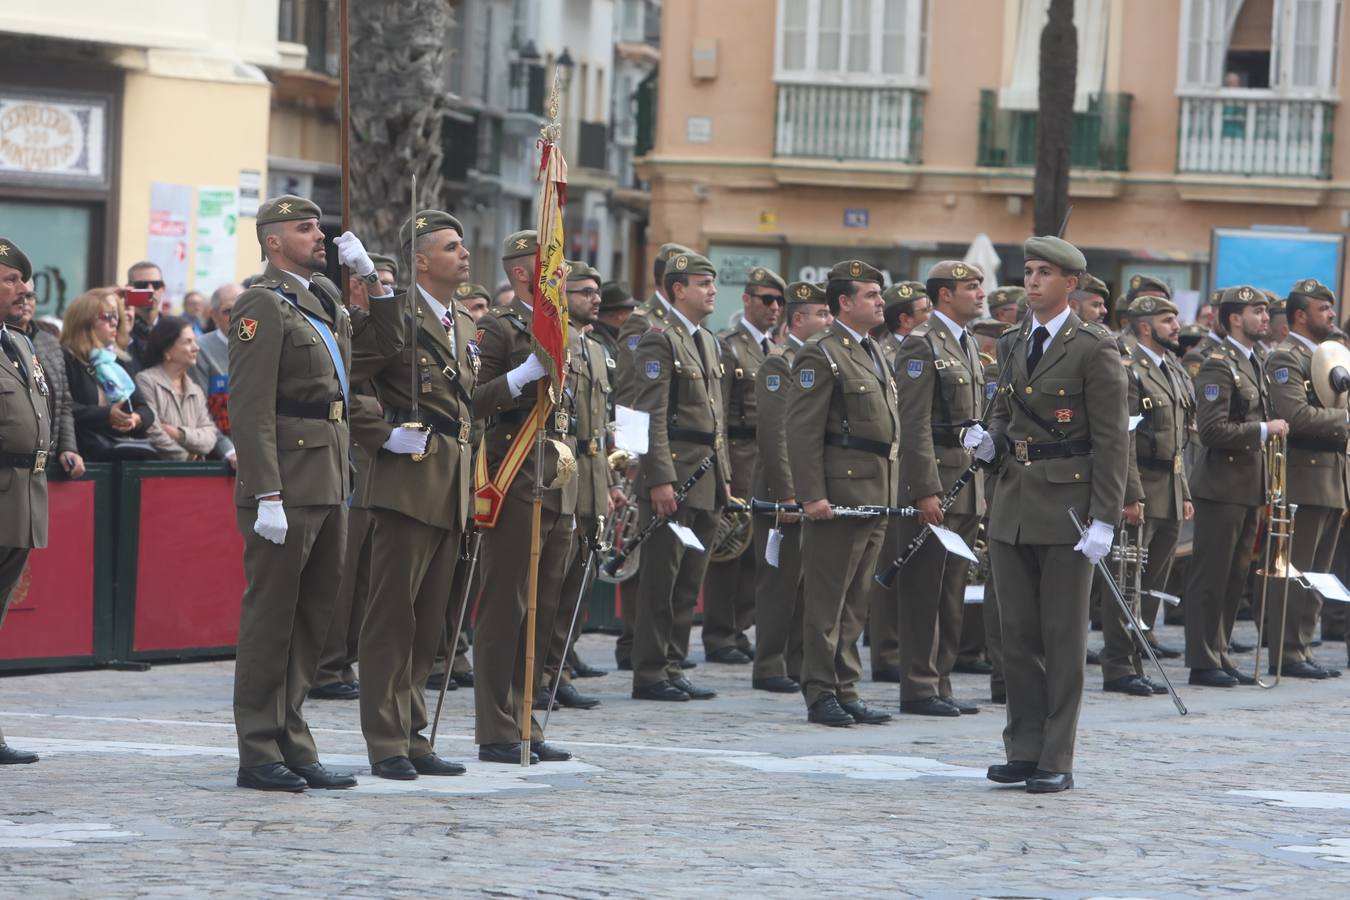 Jura de bandera civil en Cádiz